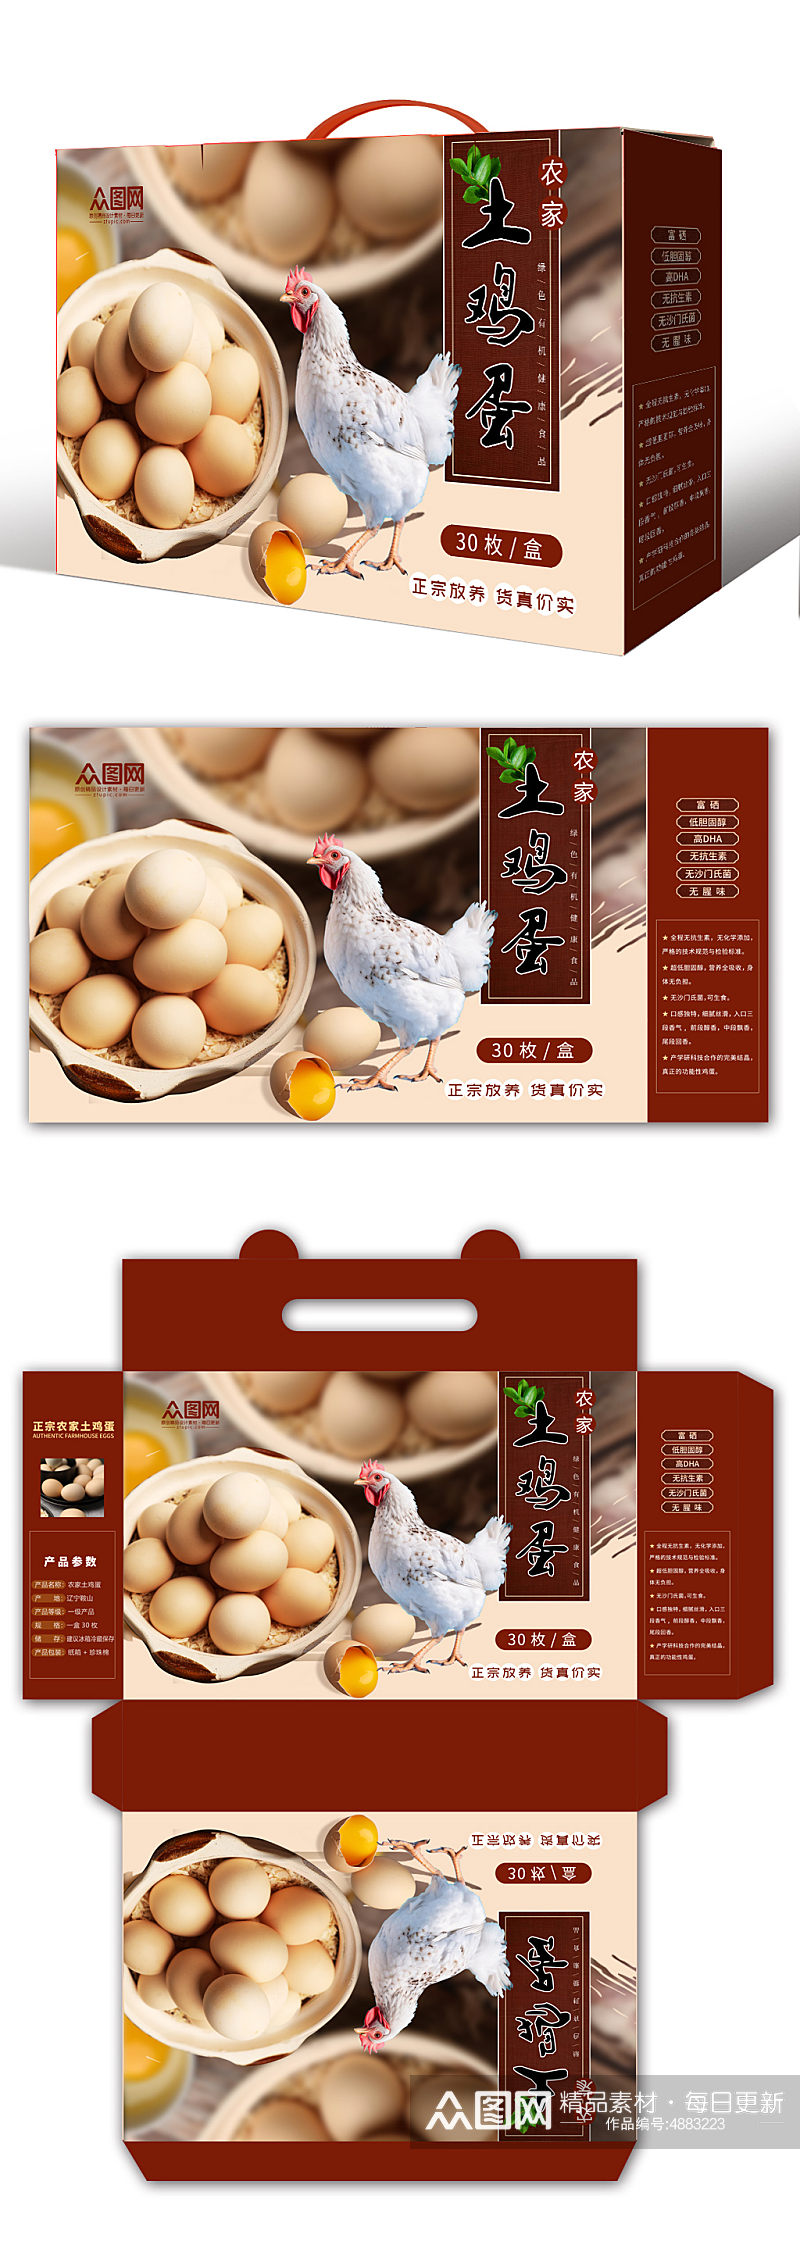 农家土鸡蛋包装礼盒设计素材